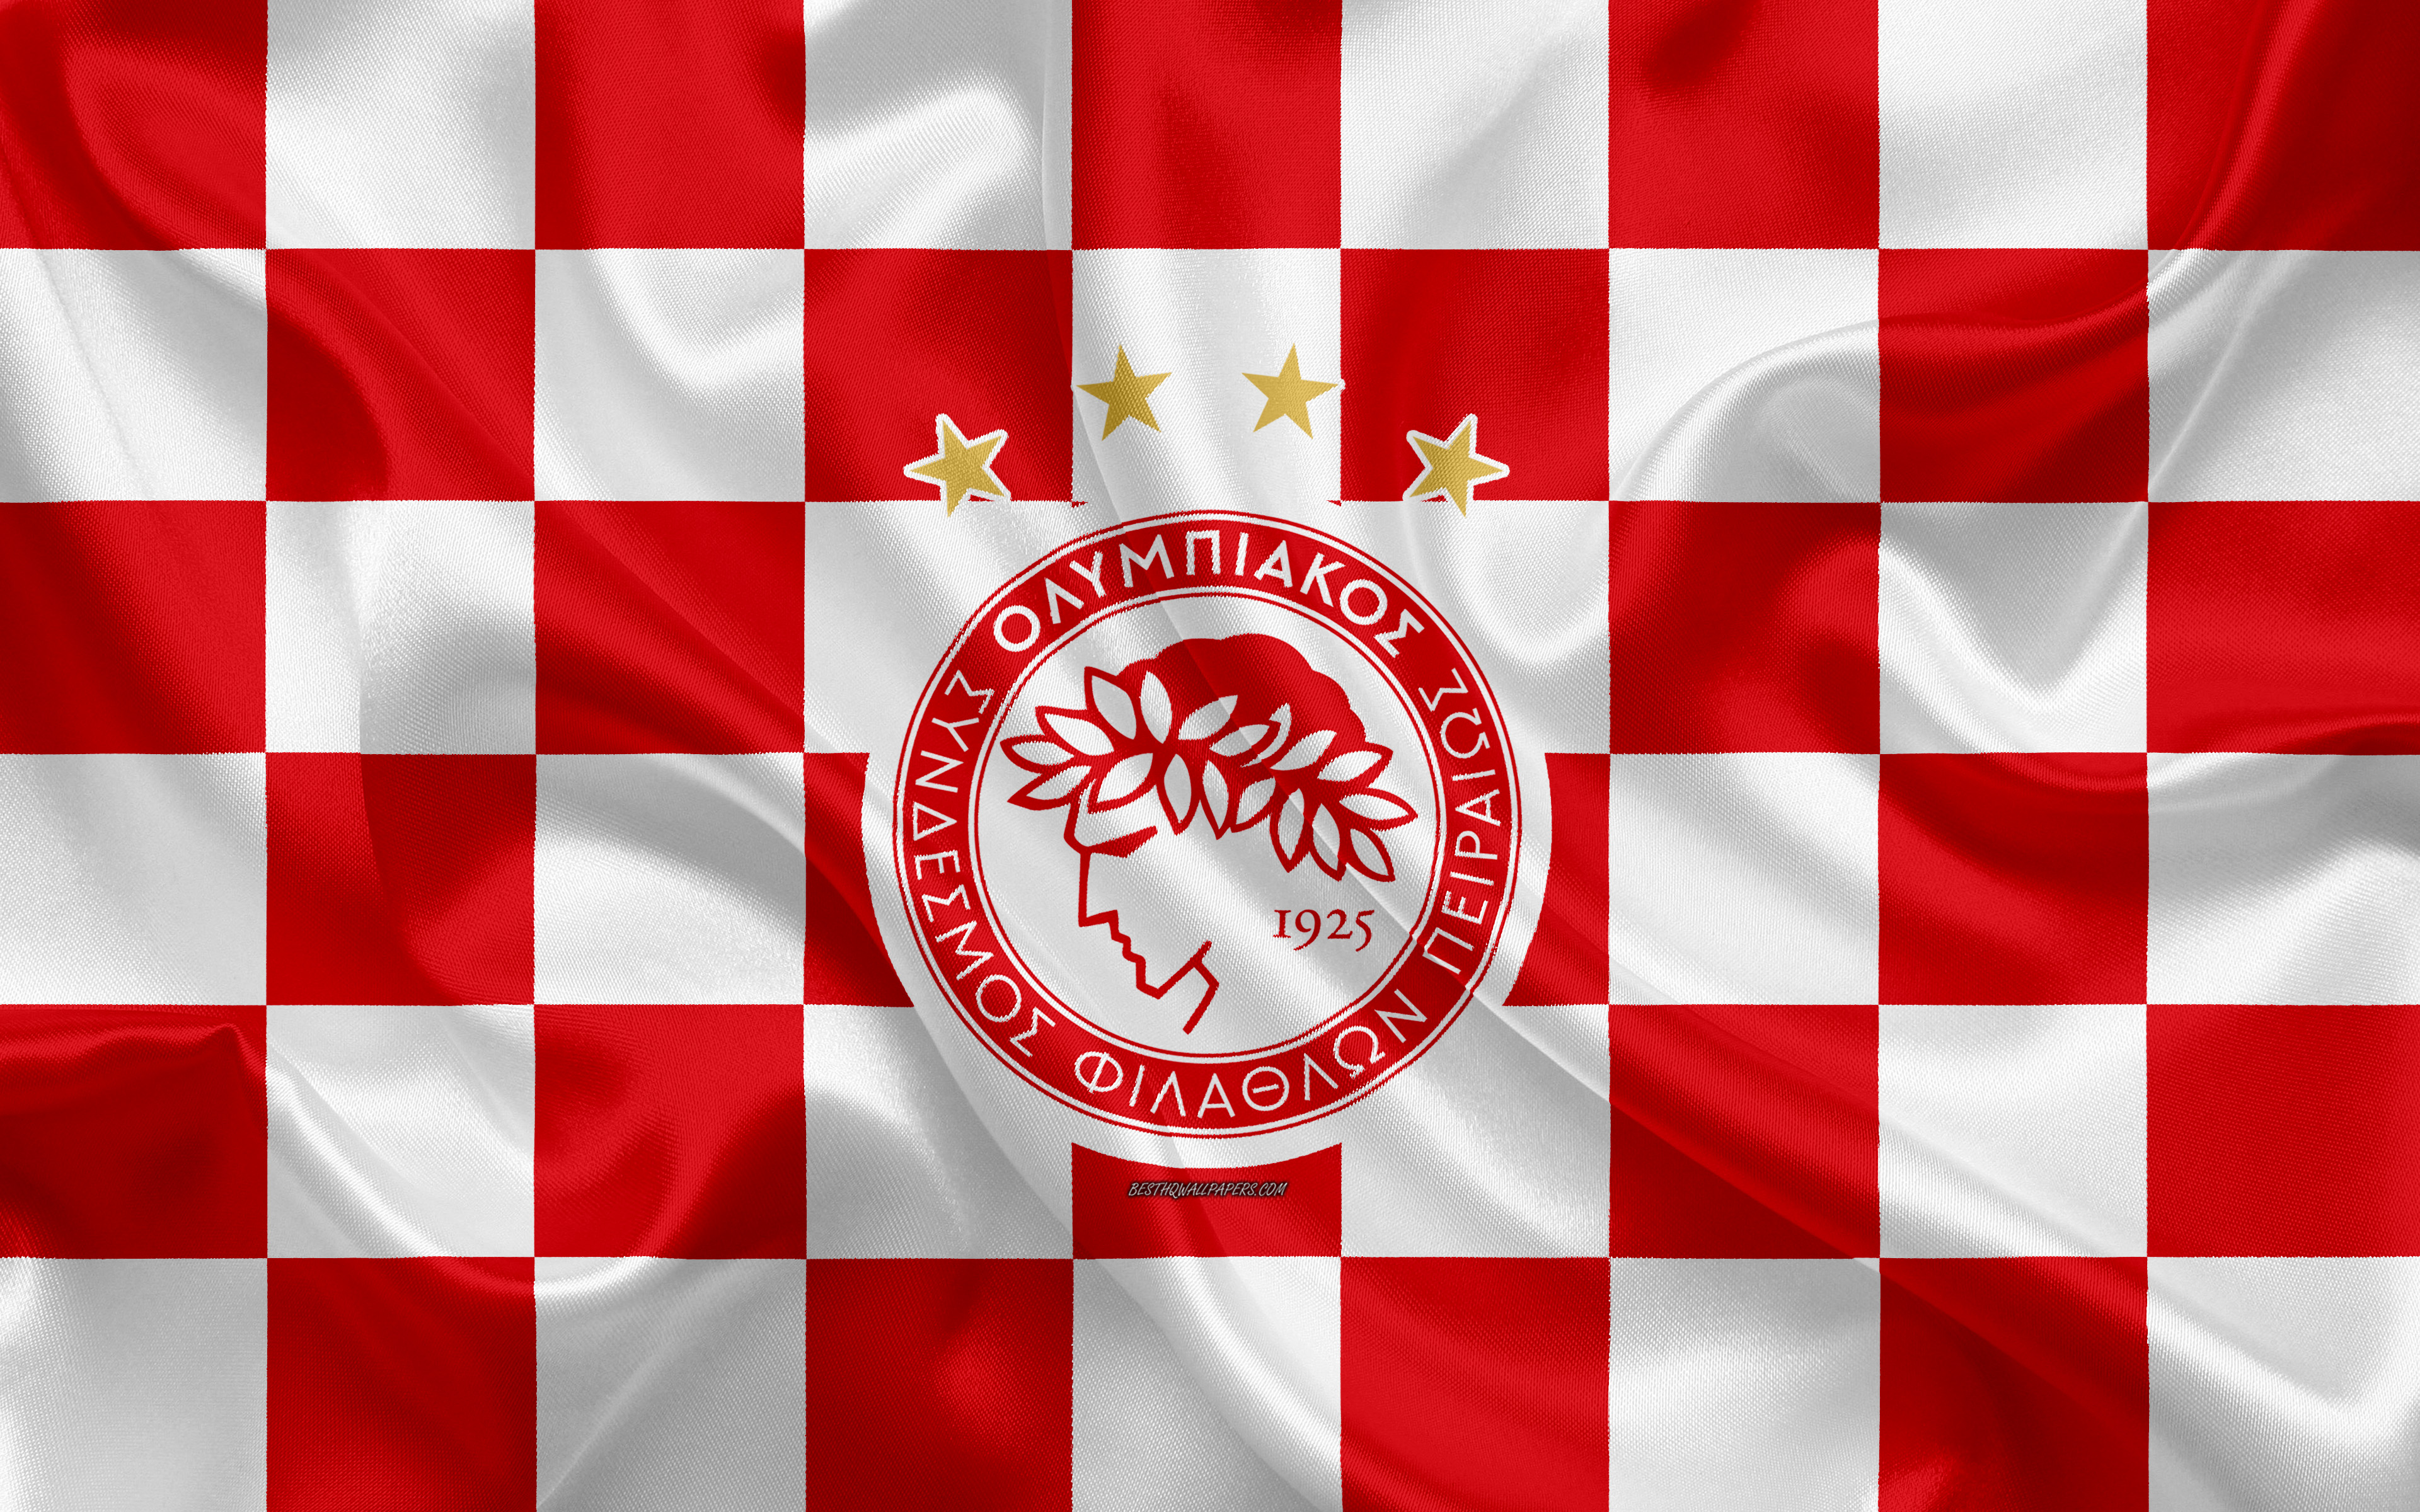 olympiacos f c, sports, emblem, logo, soccer